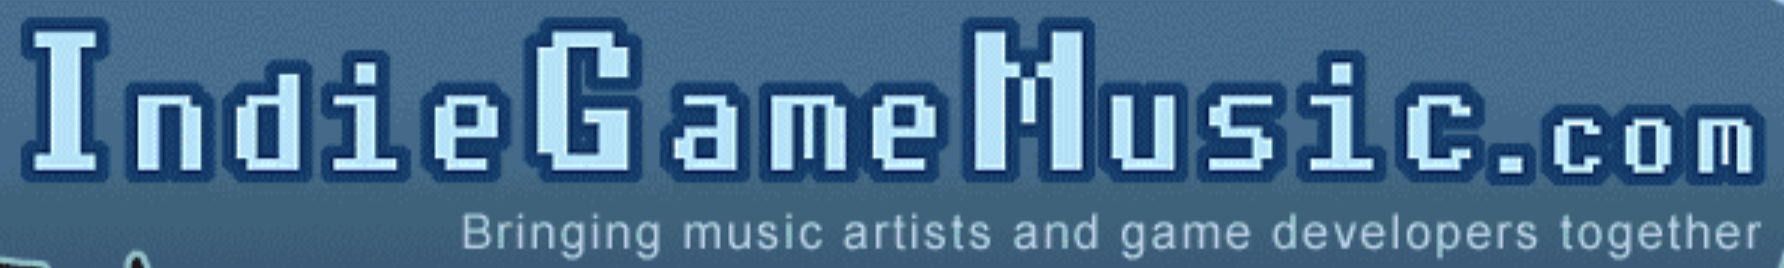 Indie Game Music